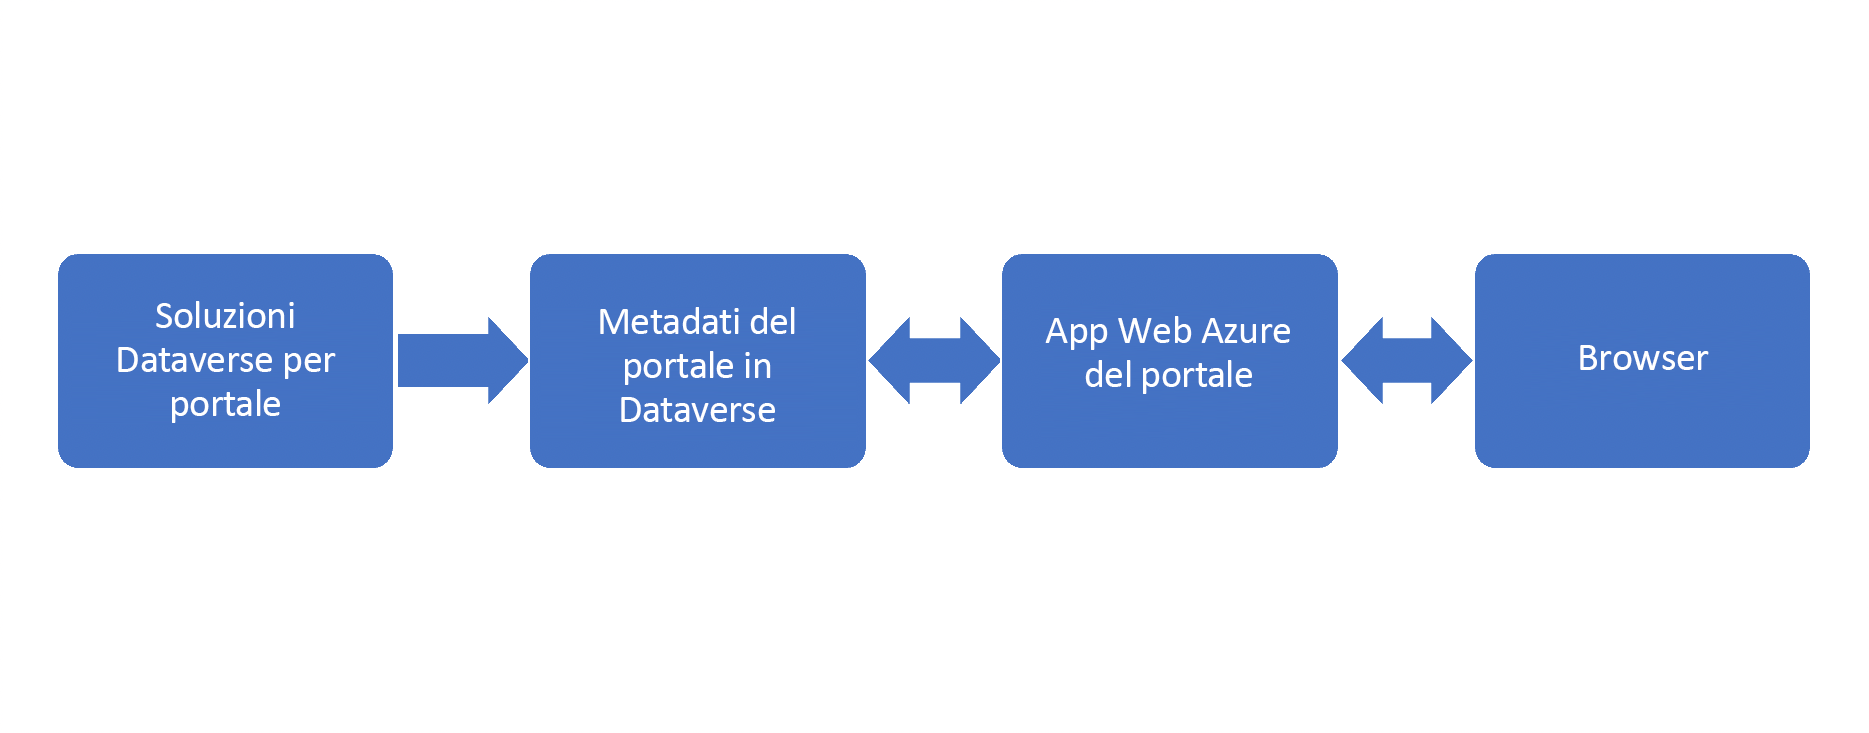 Diagramma dell'architettura del portale con i componenti soluzioni, metadati e app Web.